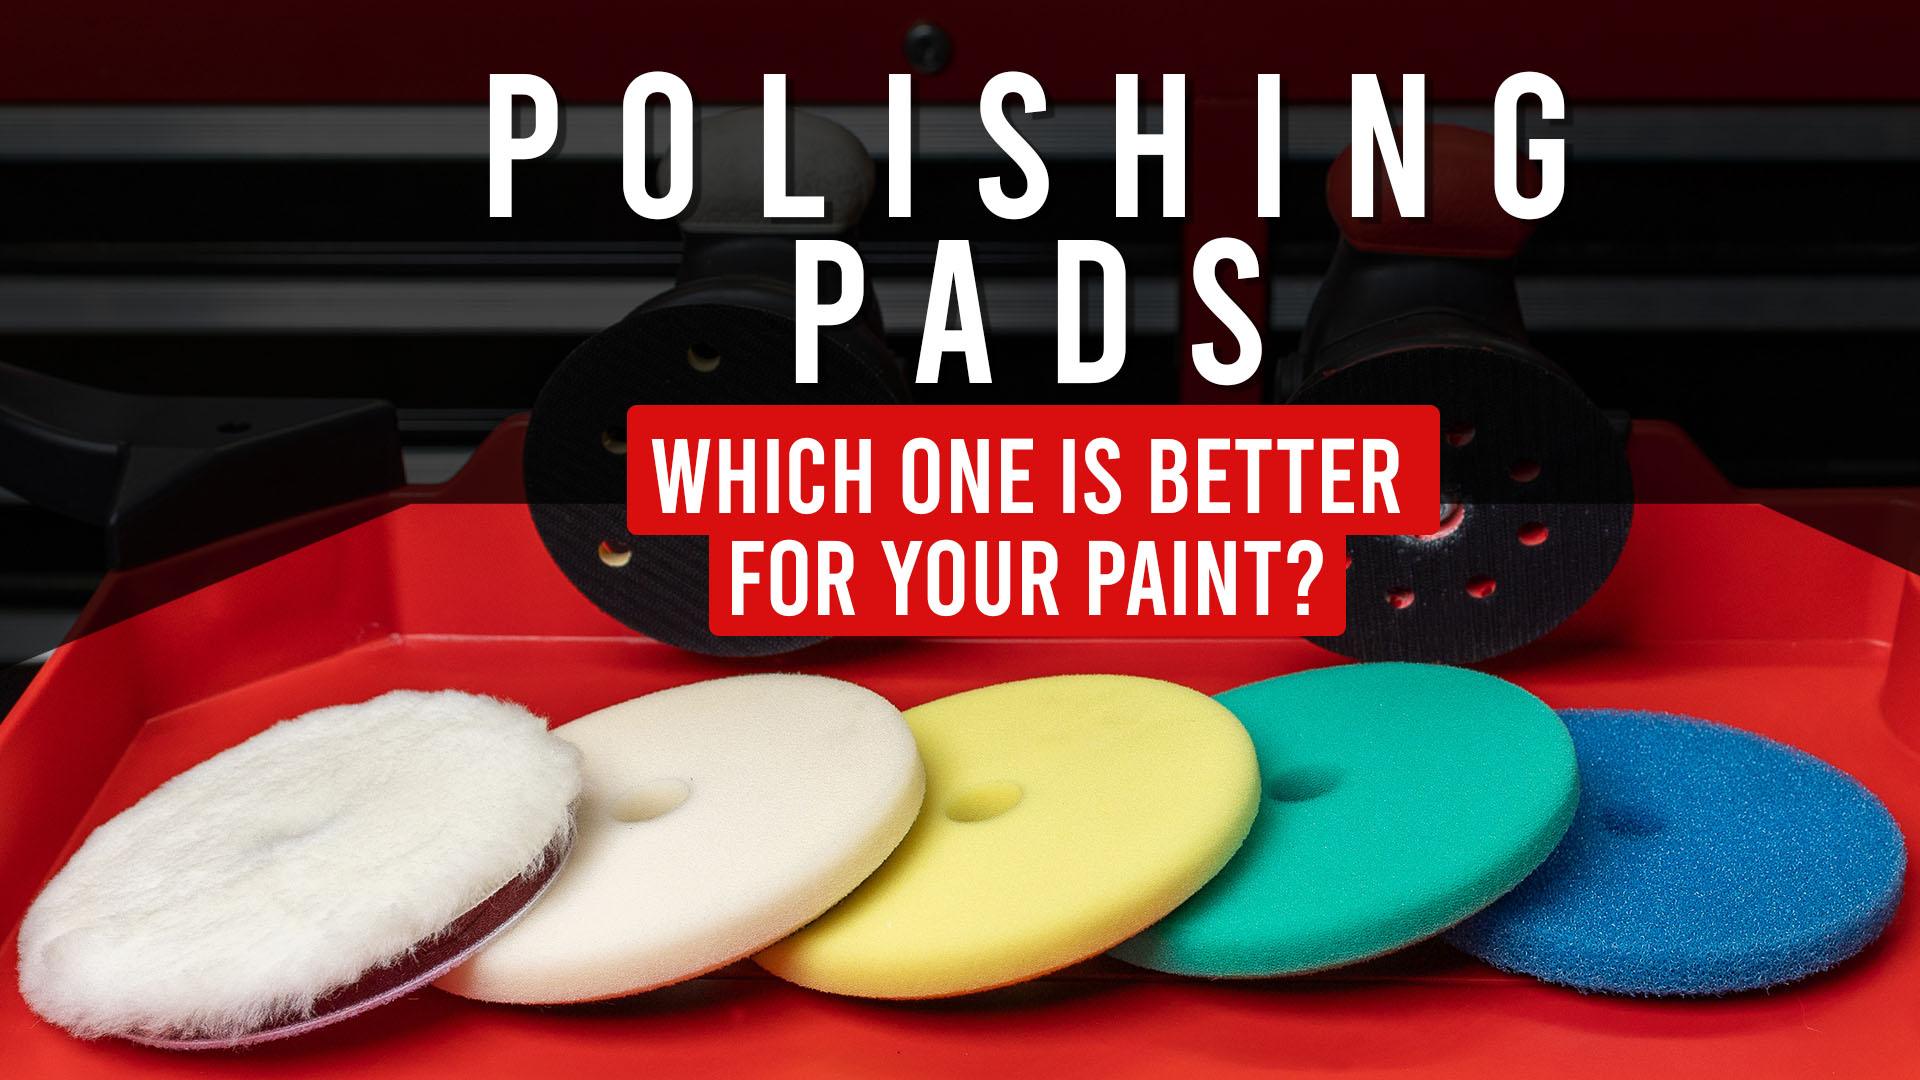 Polishing Pads, explained